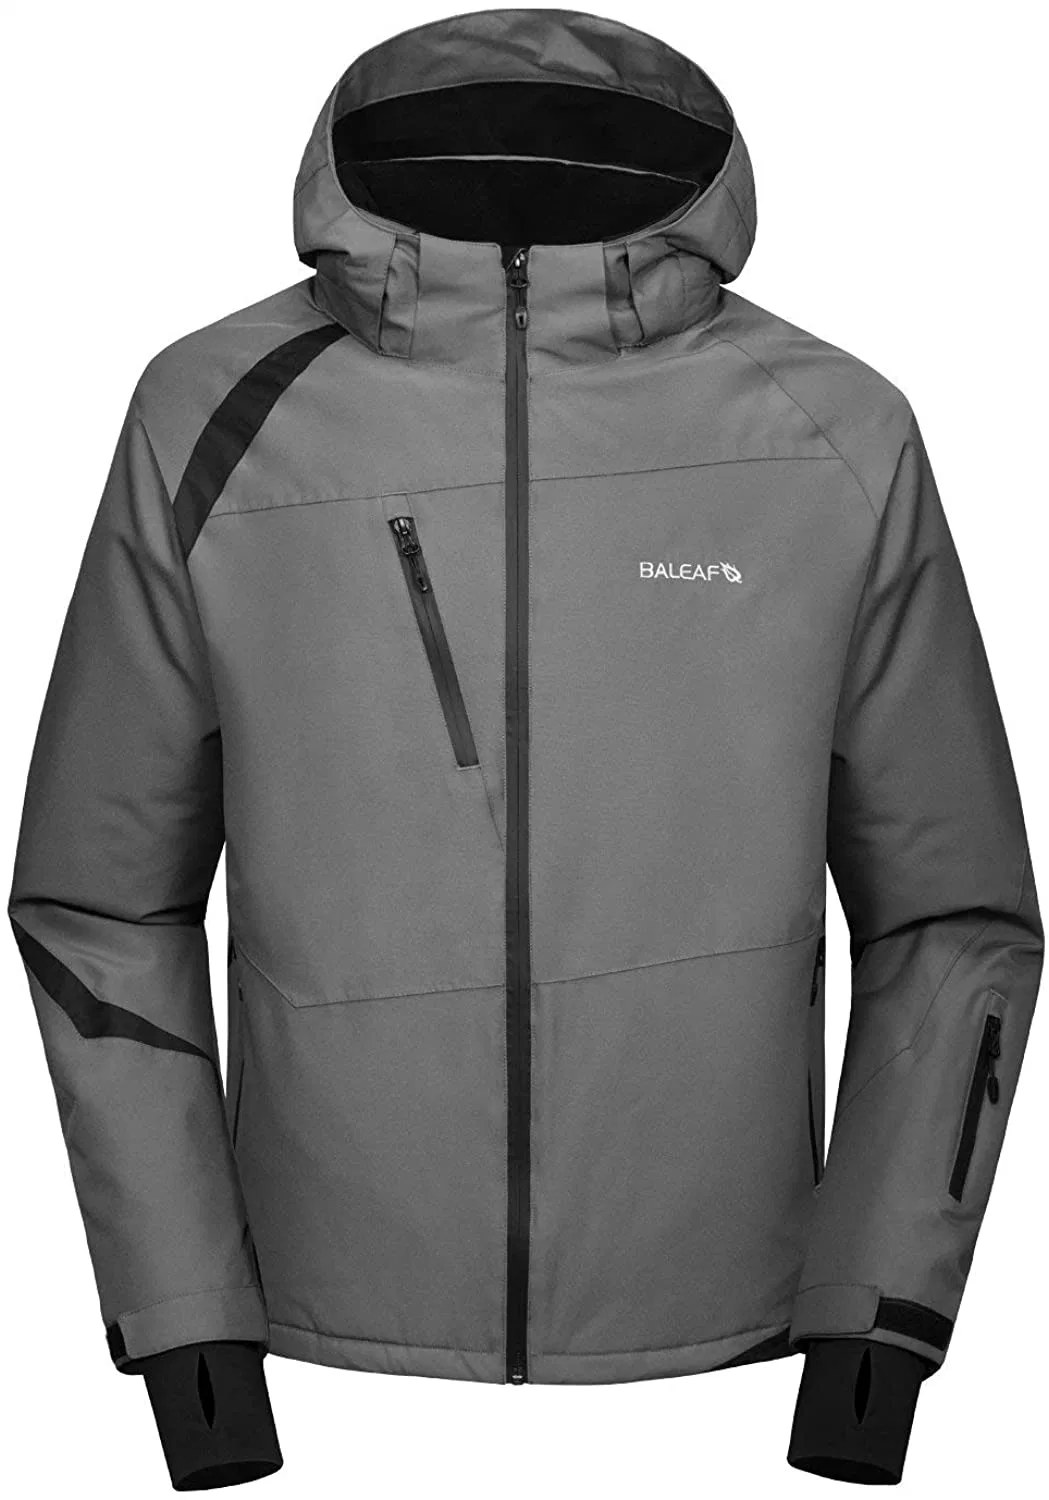 Ski Snow Jacket Windproof Waterproof Winter Coat Fleece Lined Snownorad Men&prime; S Jacket